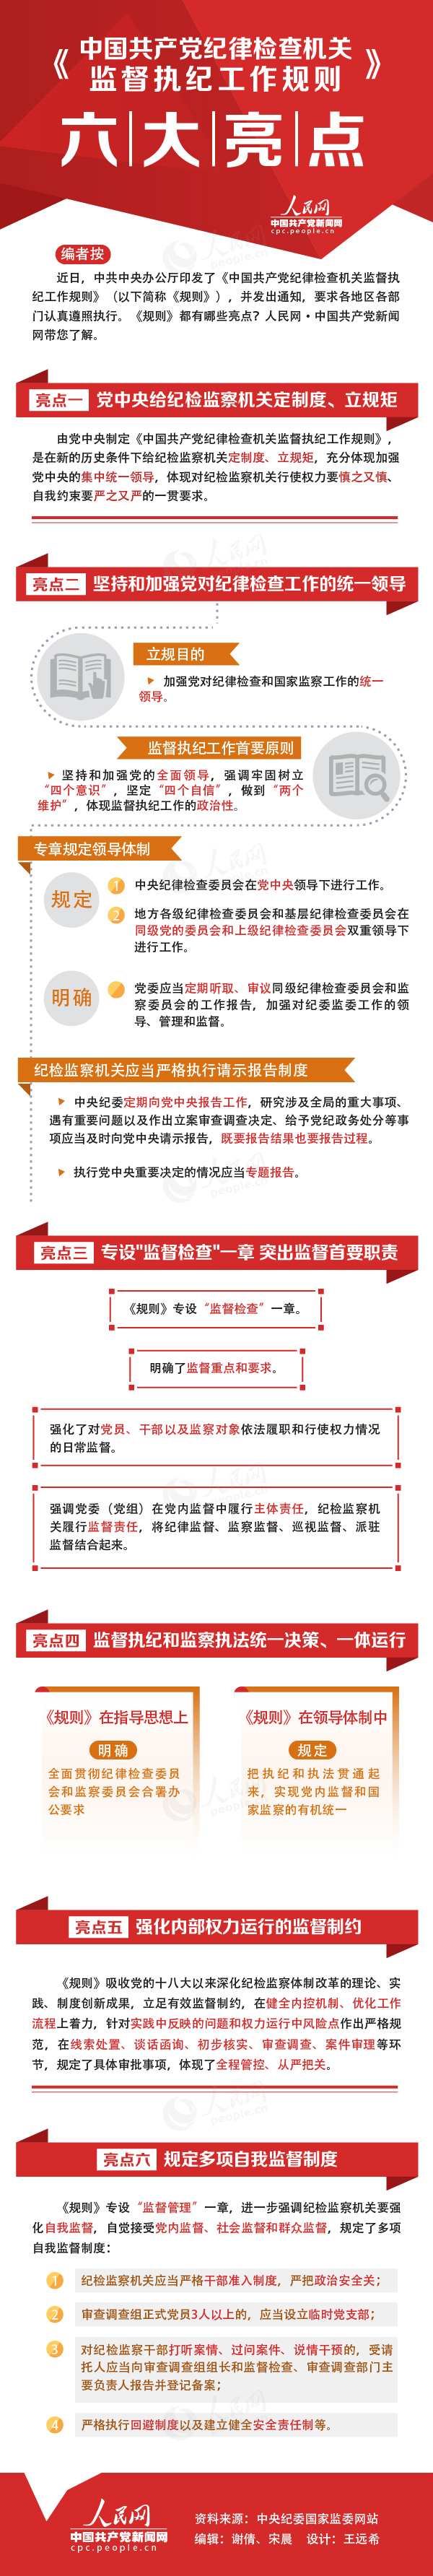 图解《中国共产党纪律检查机关监督执纪工作规则》六大亮点